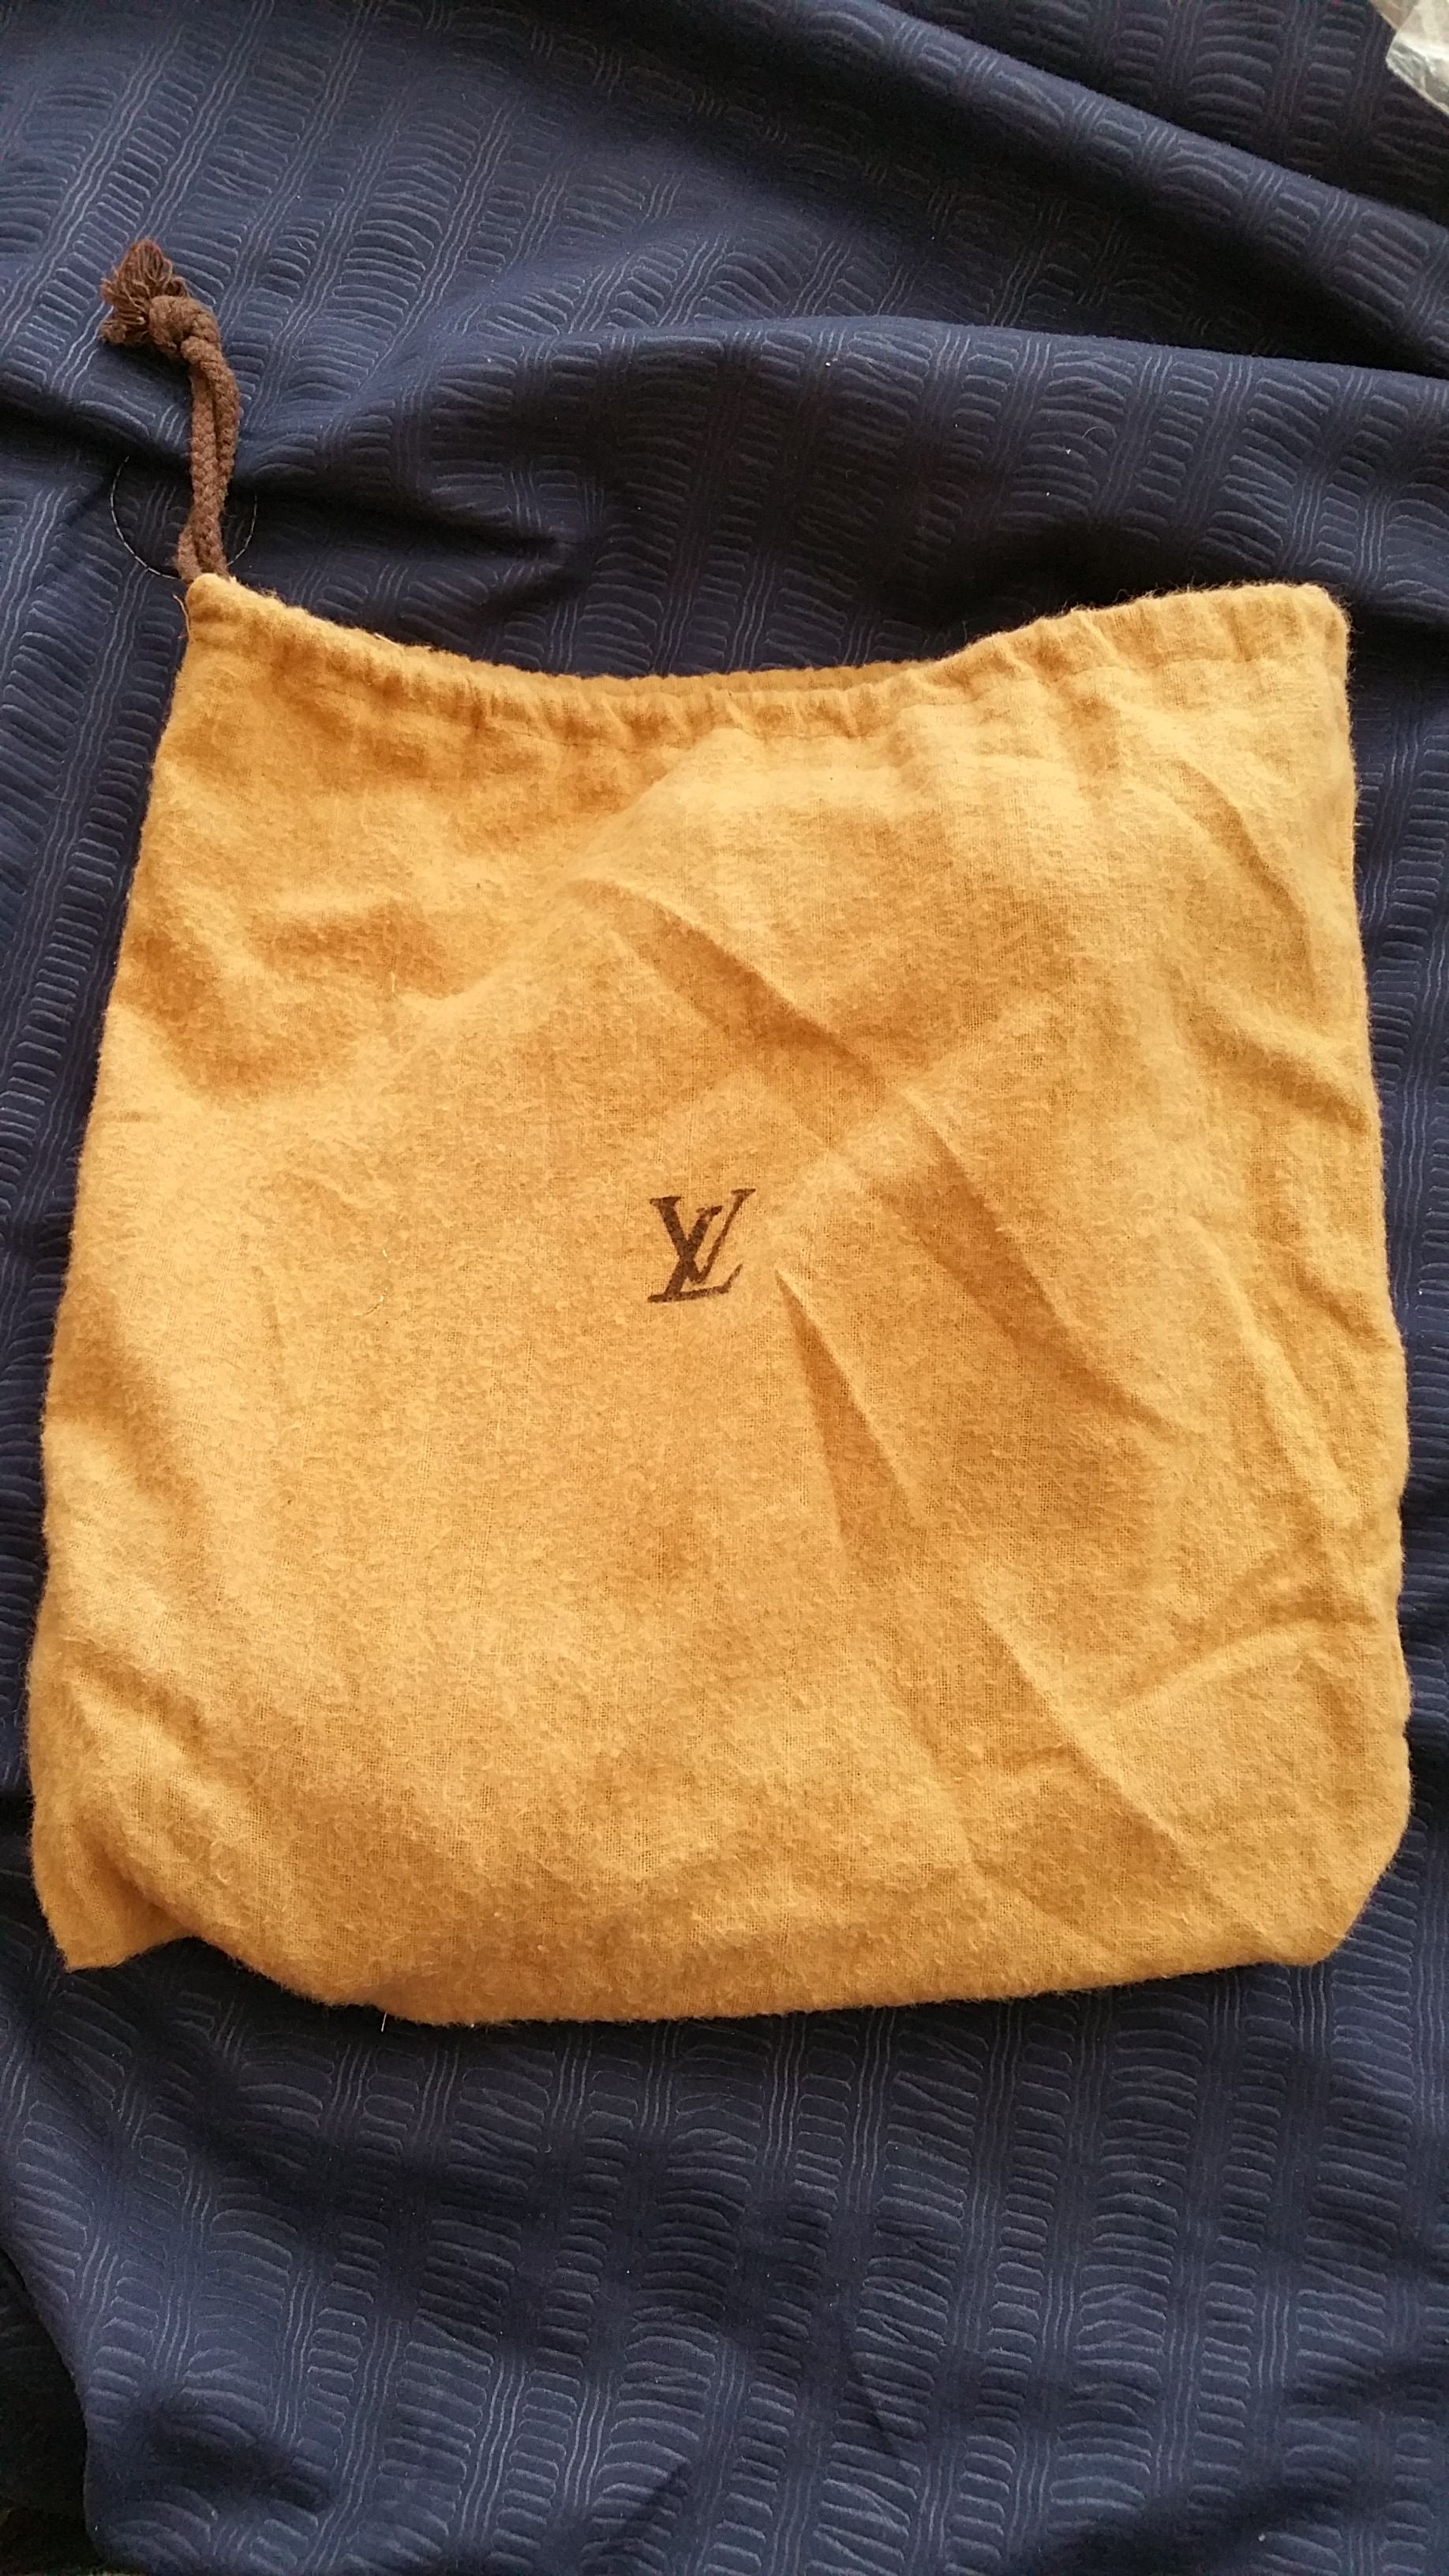 Louis Vuitton Monogram Denim Pleaty Bag for Sale in Anaheim, CA - OfferUp